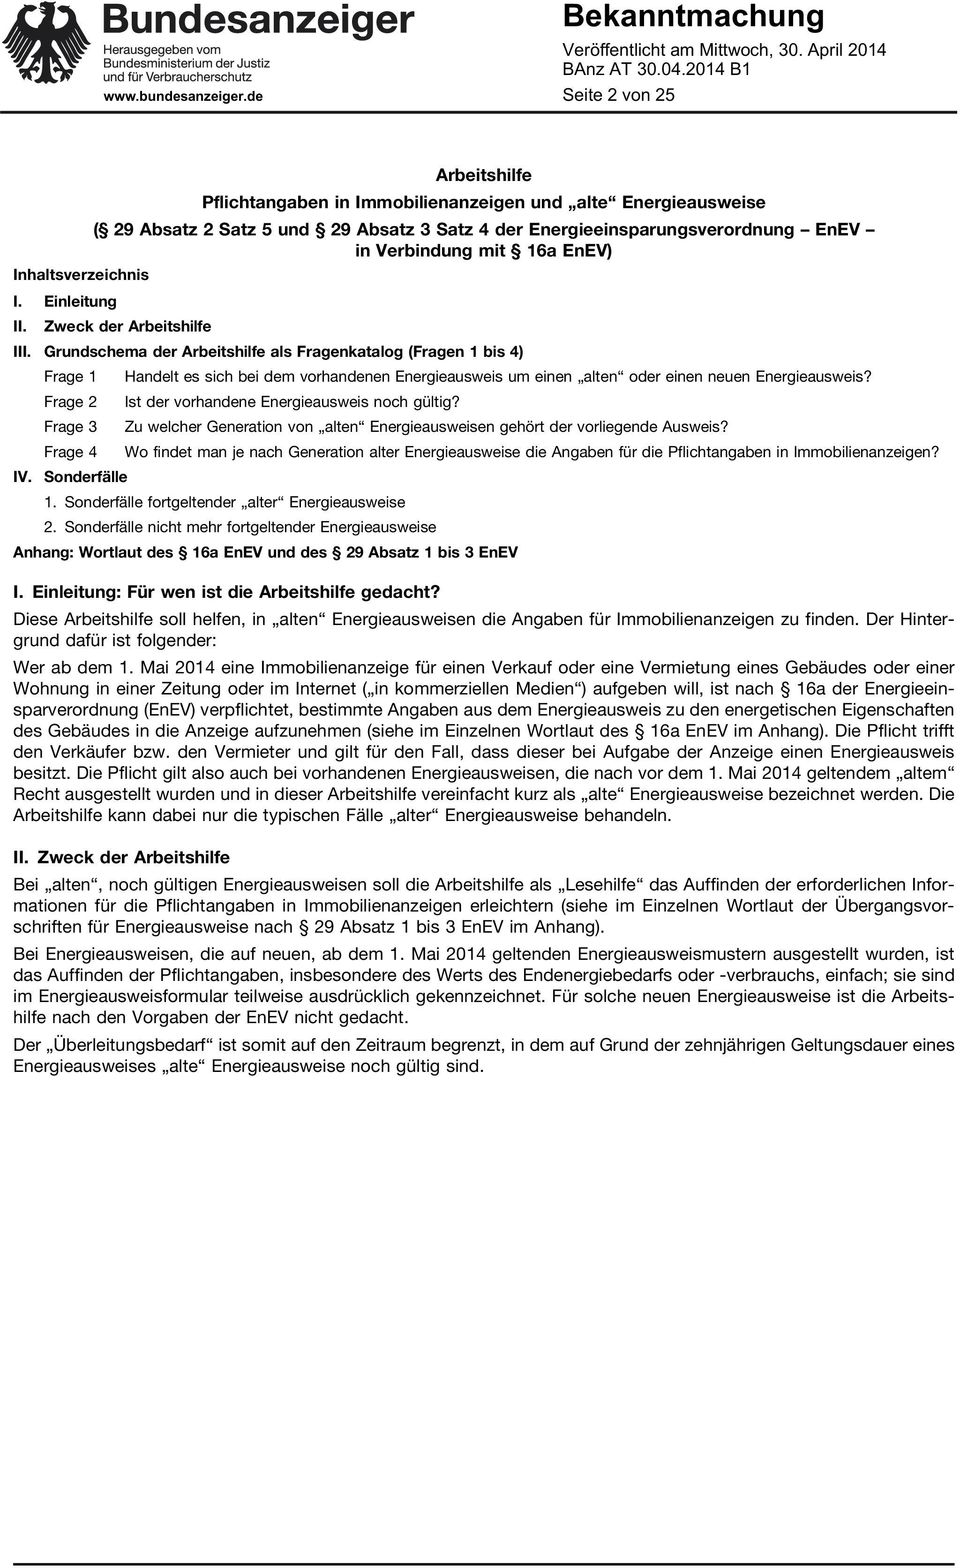 Arbeitshilfe III. Grundschema der Arbeitshilfe als Fragenkatalog (Fragen 1 bis 4) IV.